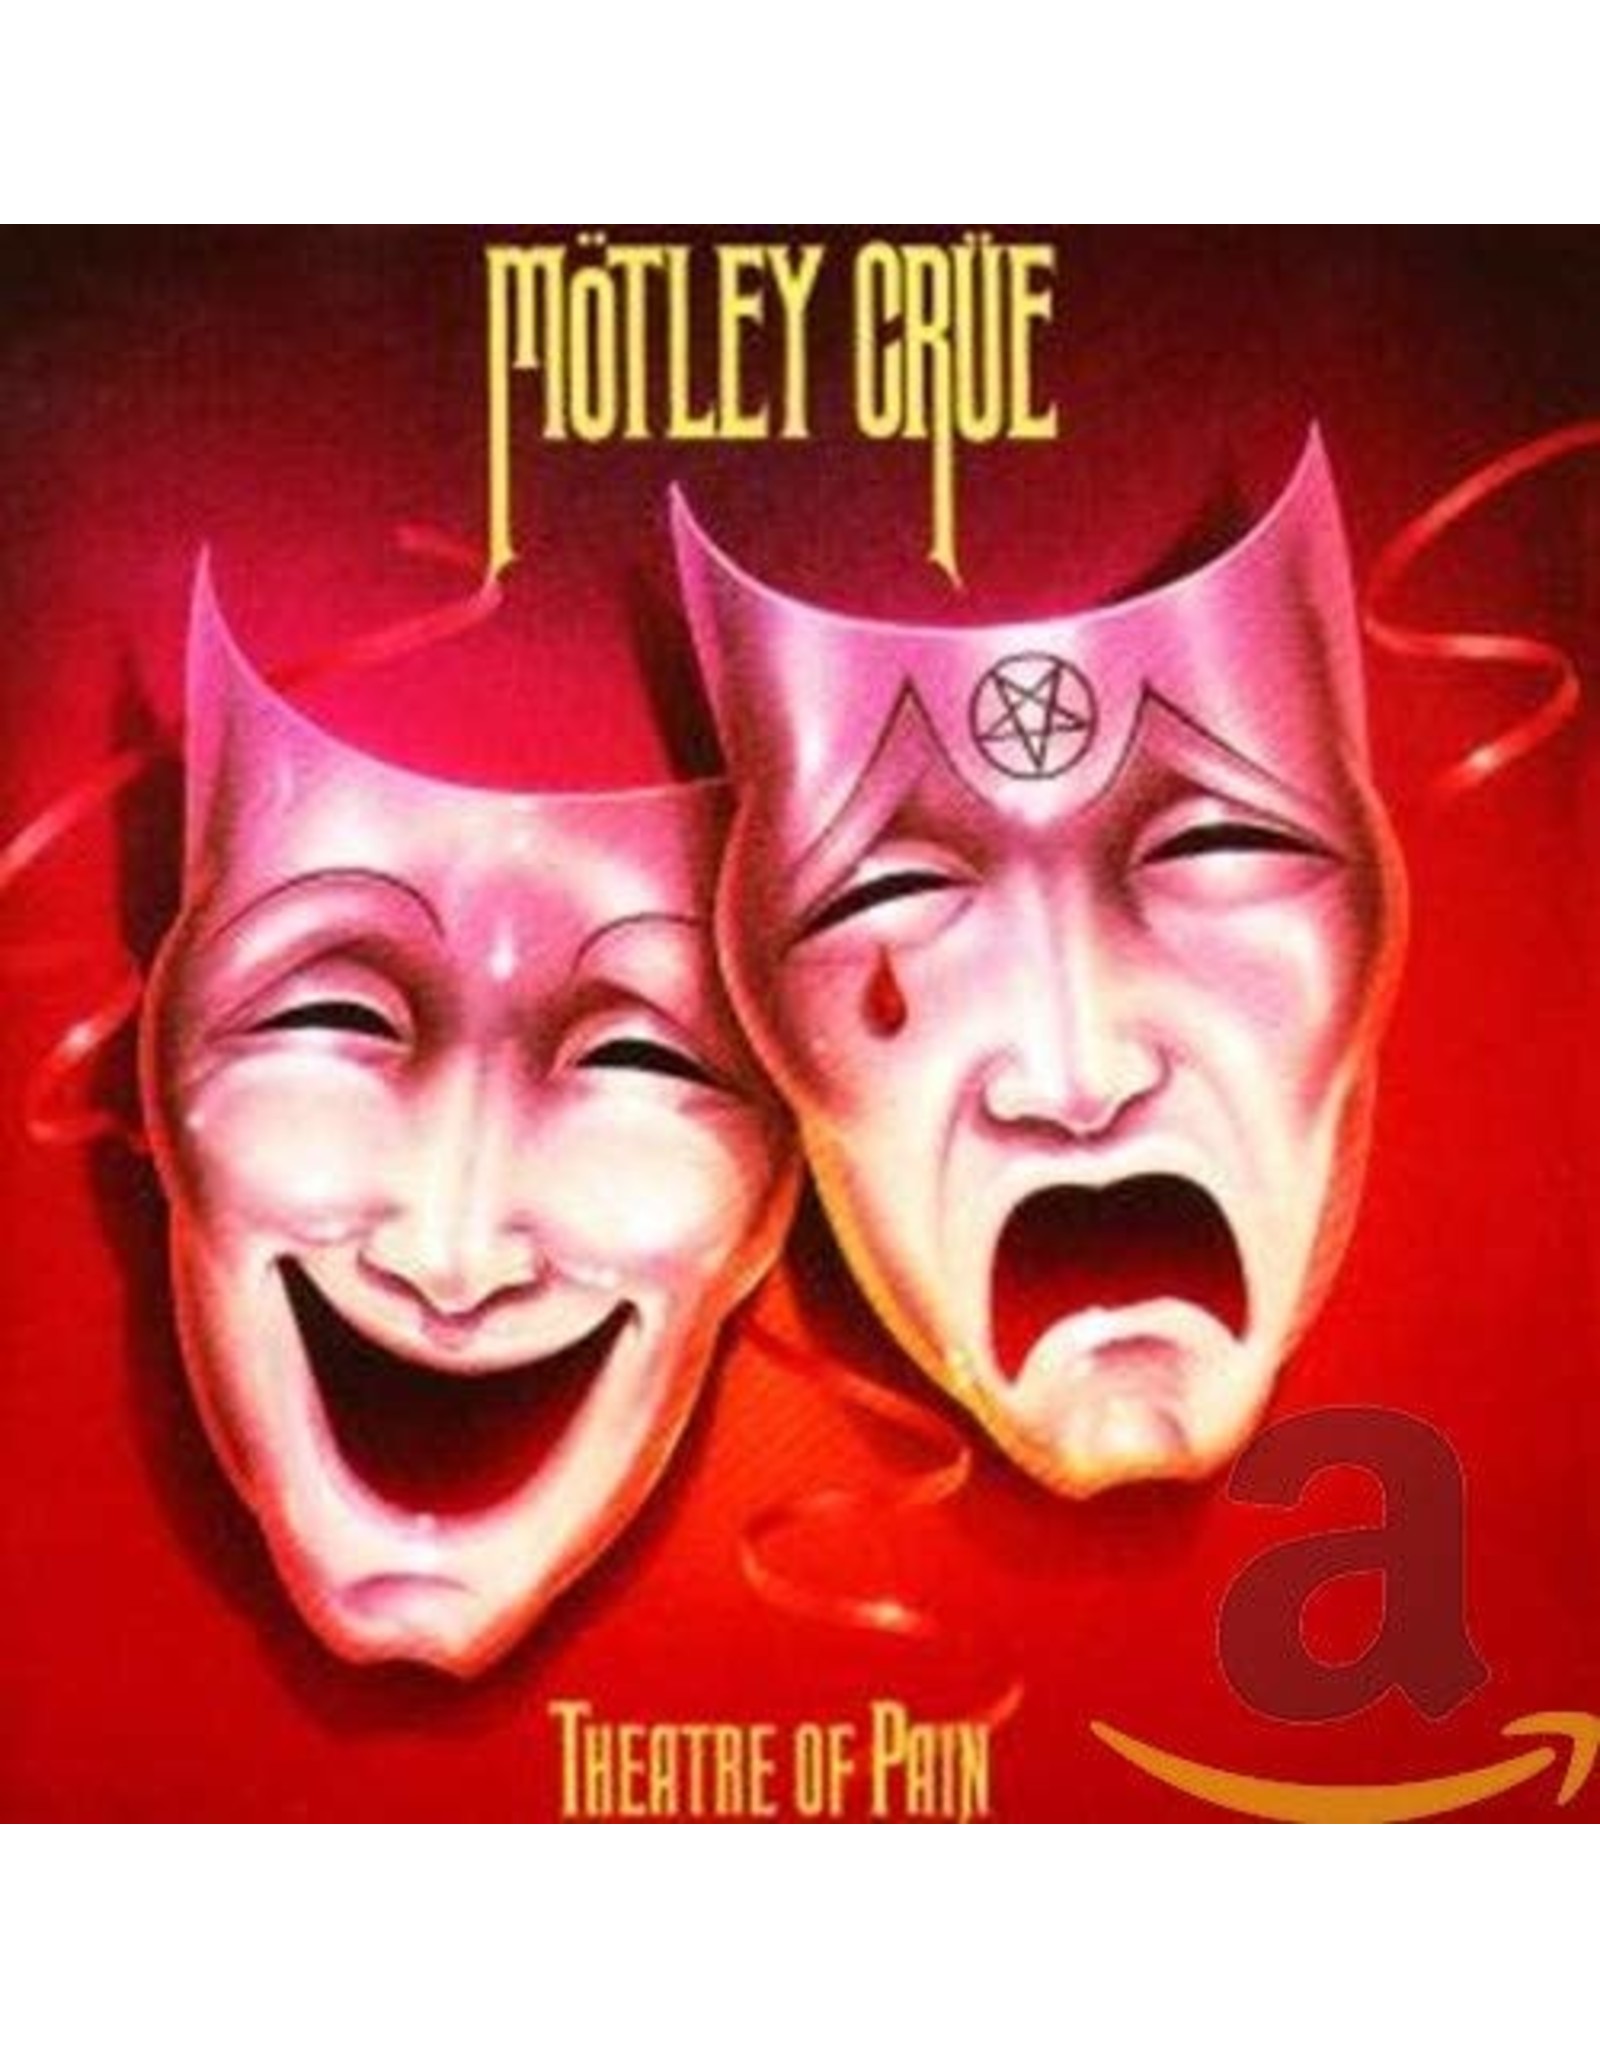 Motley Crue - Theatre Of Pain CD